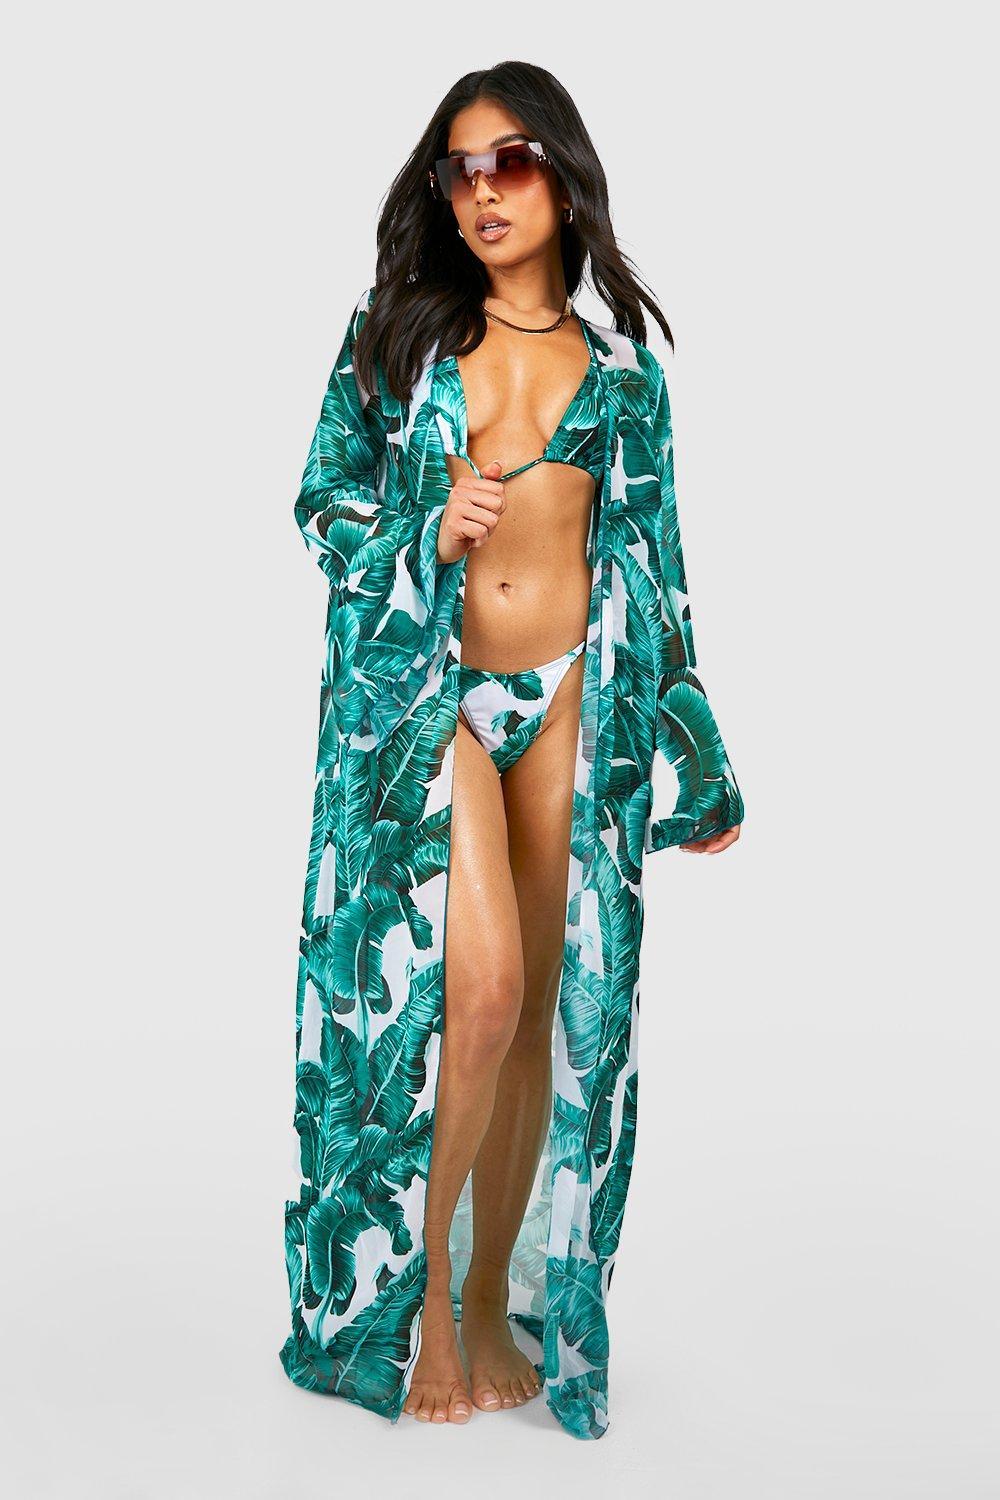 Vågn op Betjene Fremhævet Boohoo Petite Palm Print Bikini And Kimono Set in Blue | Lyst